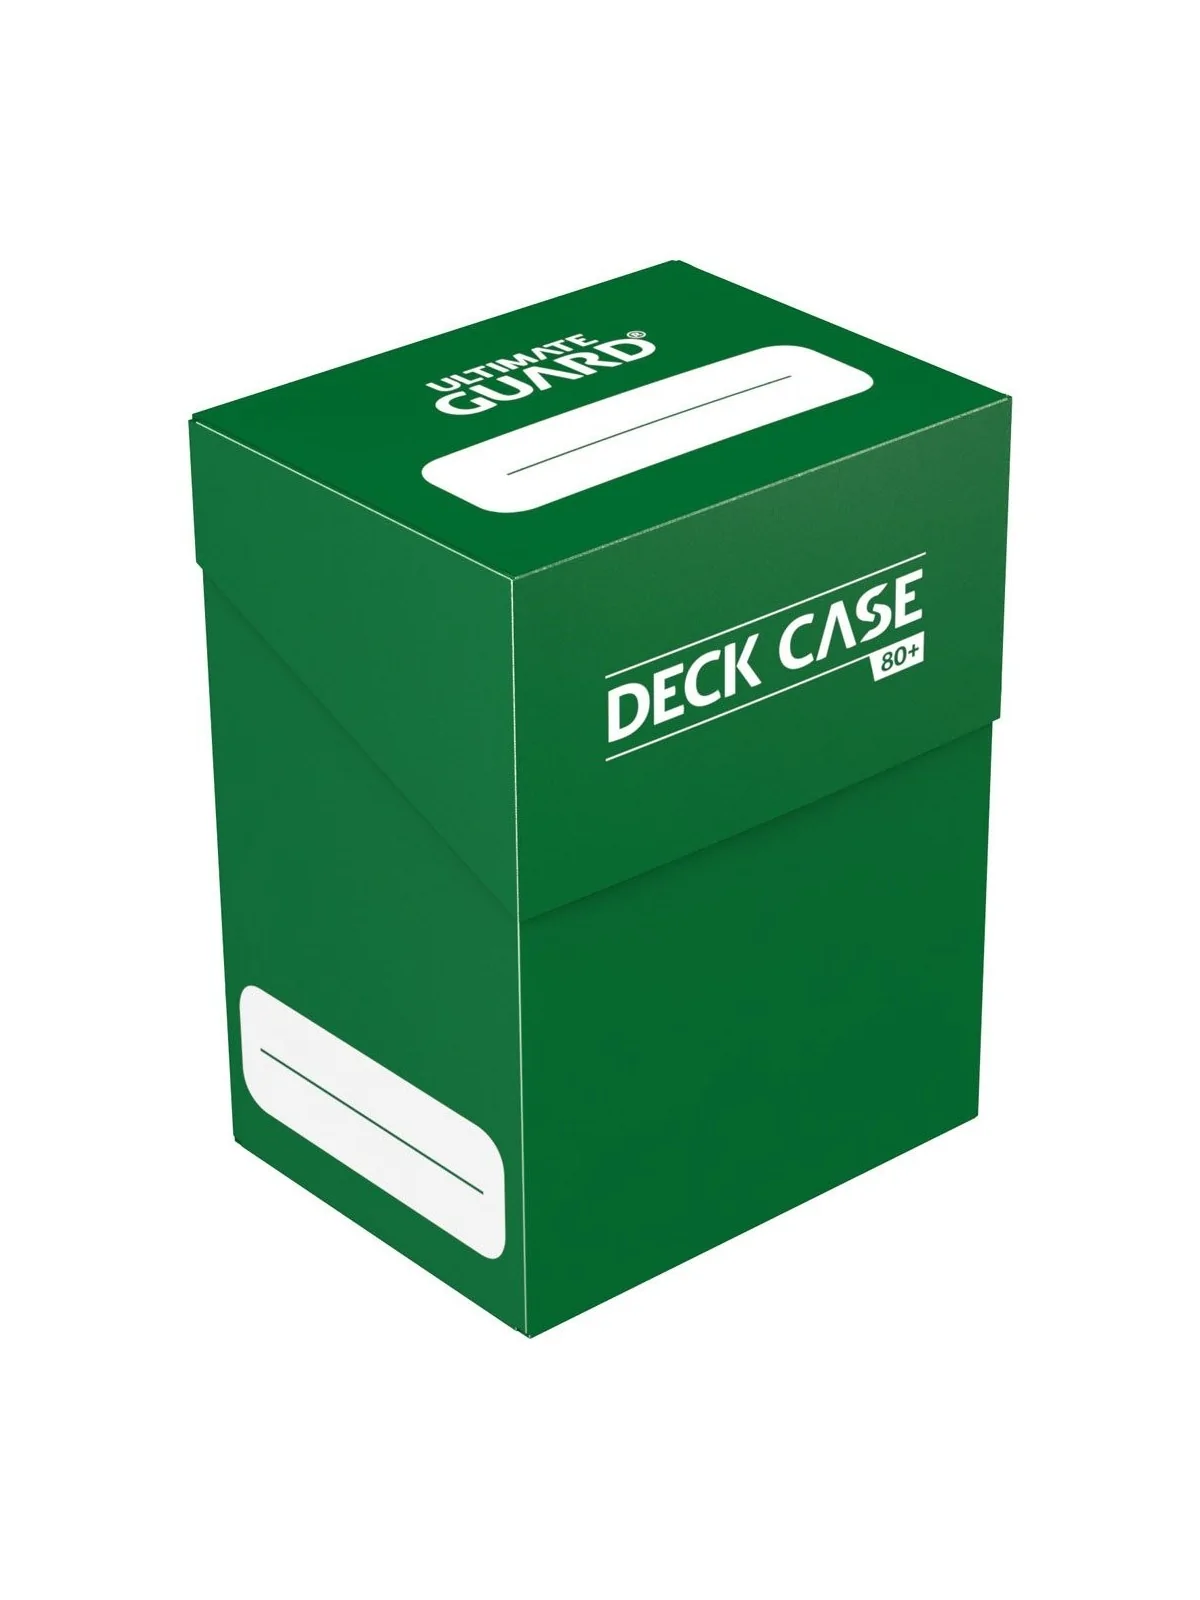 Comprar Ultimate Guard Deck Case Tamaño Estandar 80+ Verde barato al m